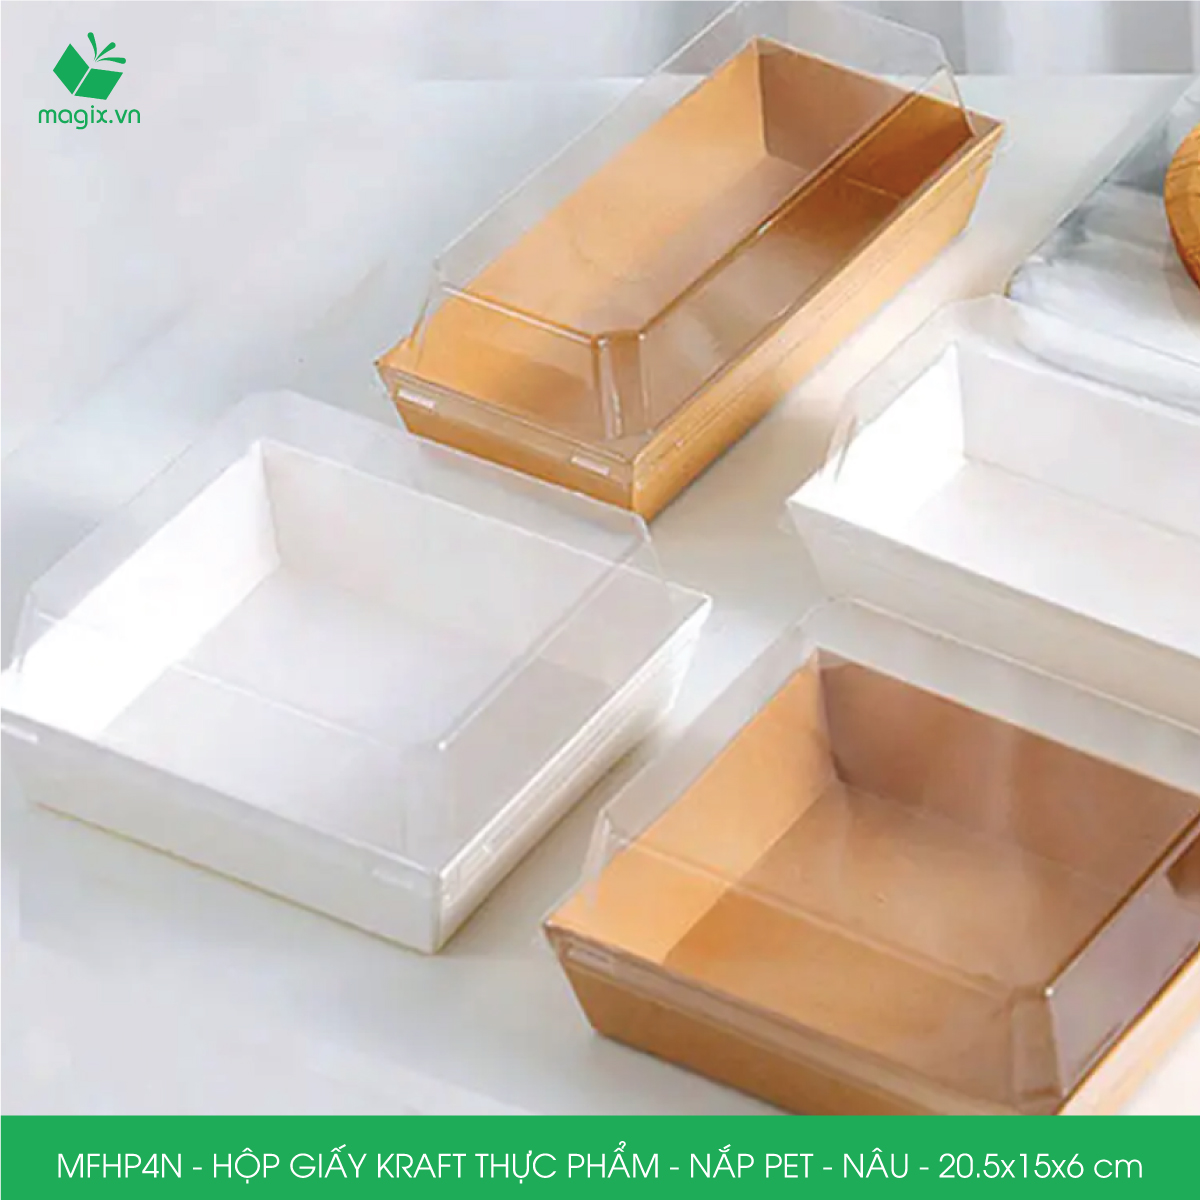 MFHP4N - 20.5x15x6 cm - 50 hộp giấy kraft thực phẩm màu nâu nắp Pet, hộp giấy chữ nhật đựng thức ăn, hộp bánh nắp trong